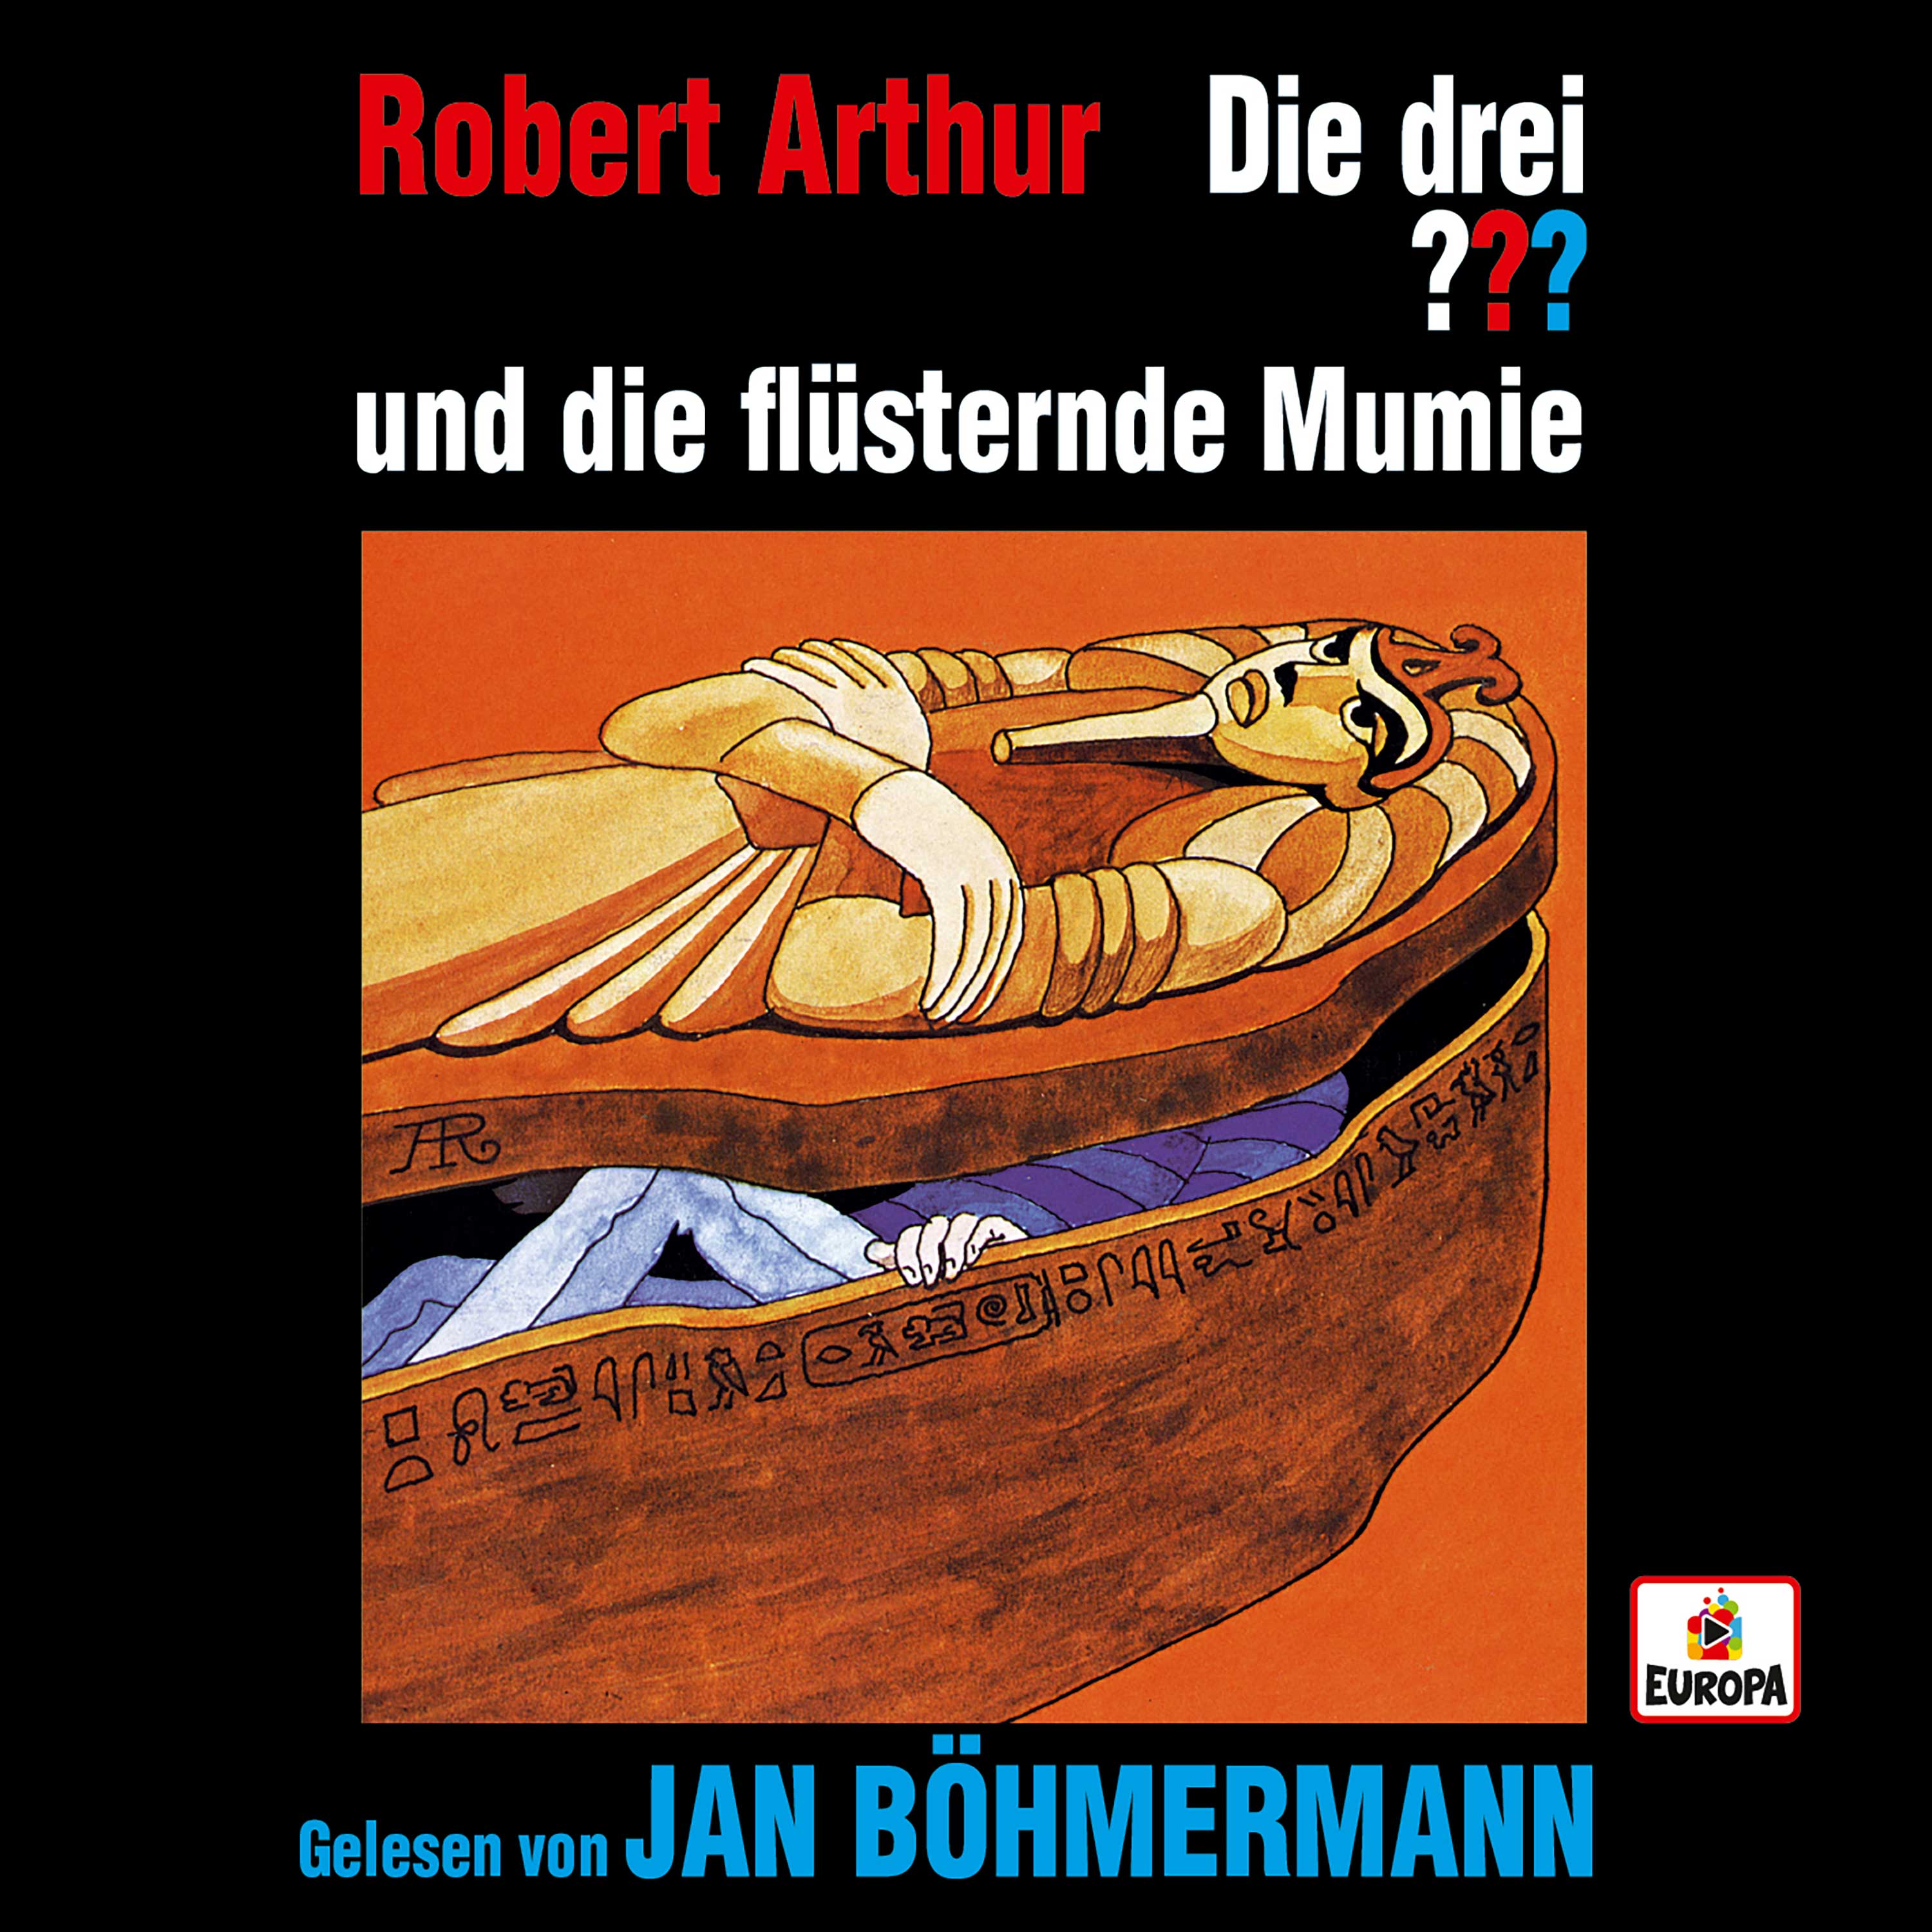 Jan Böhmermann liest die flüsternde Mumie - Die drei ??? Family & Friends Hörbuch-Reihe geht weiter!